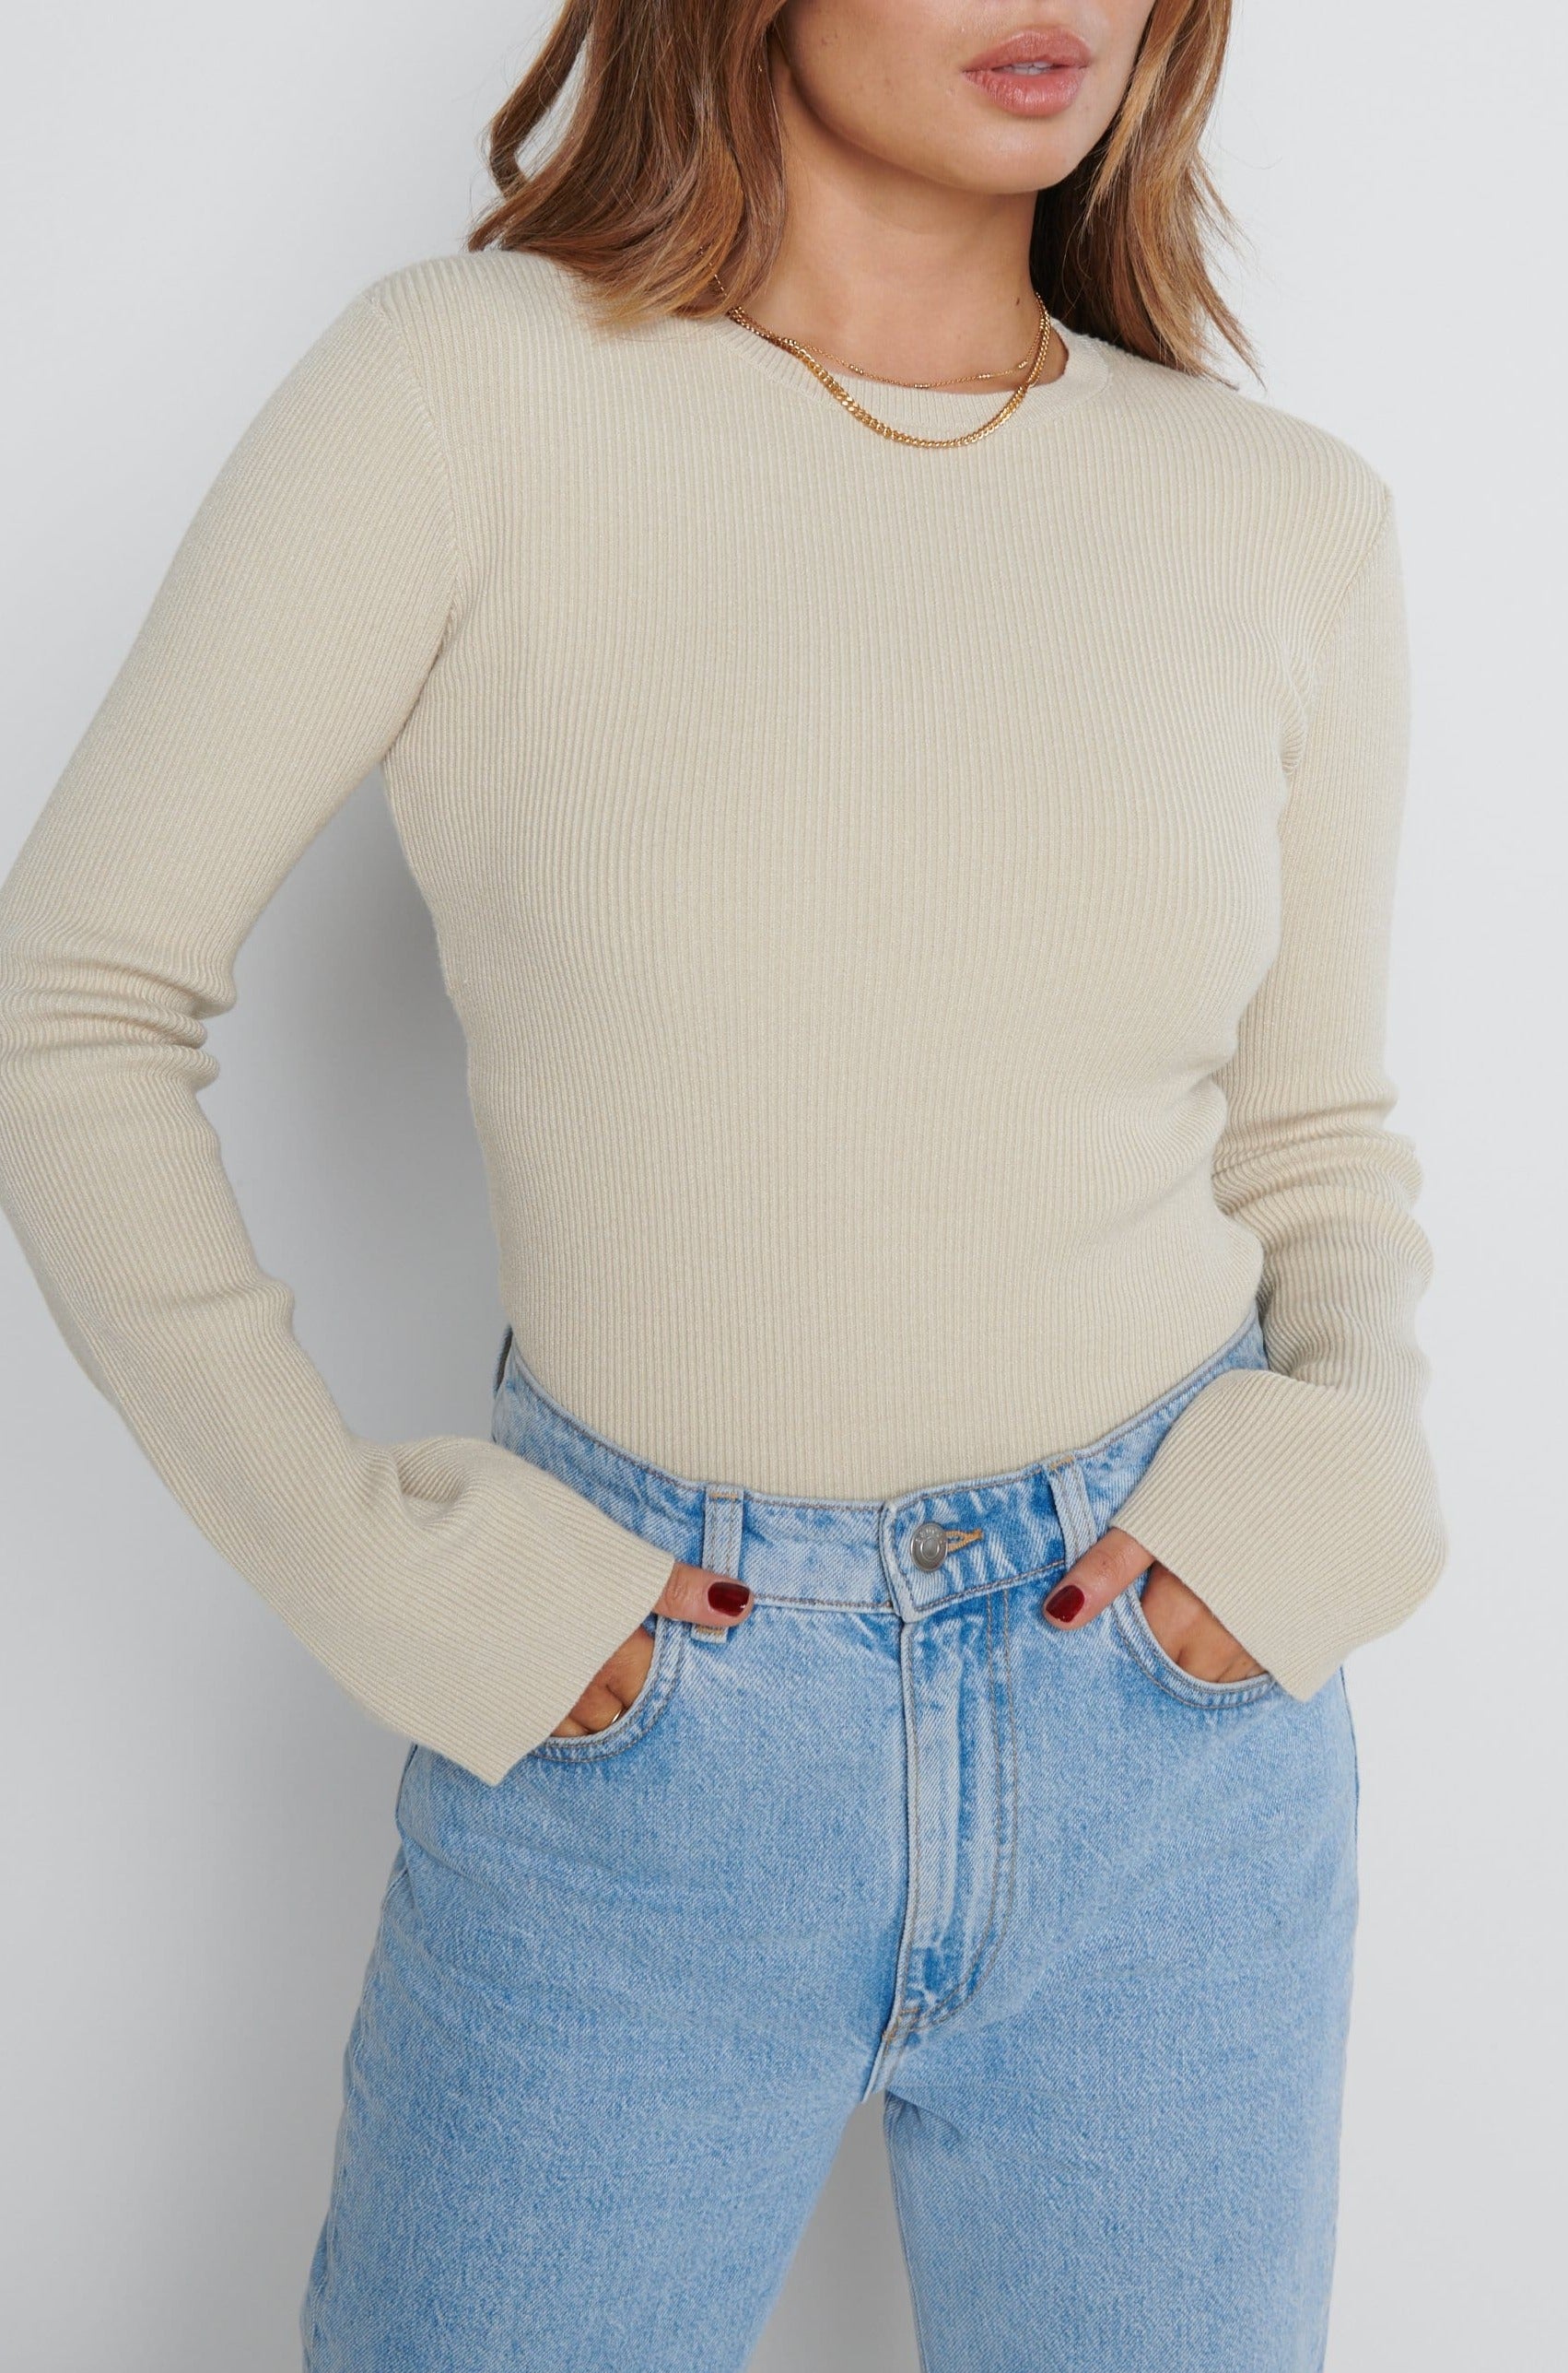 Jayla Long Sleeve Knit Top - Beige, XXL